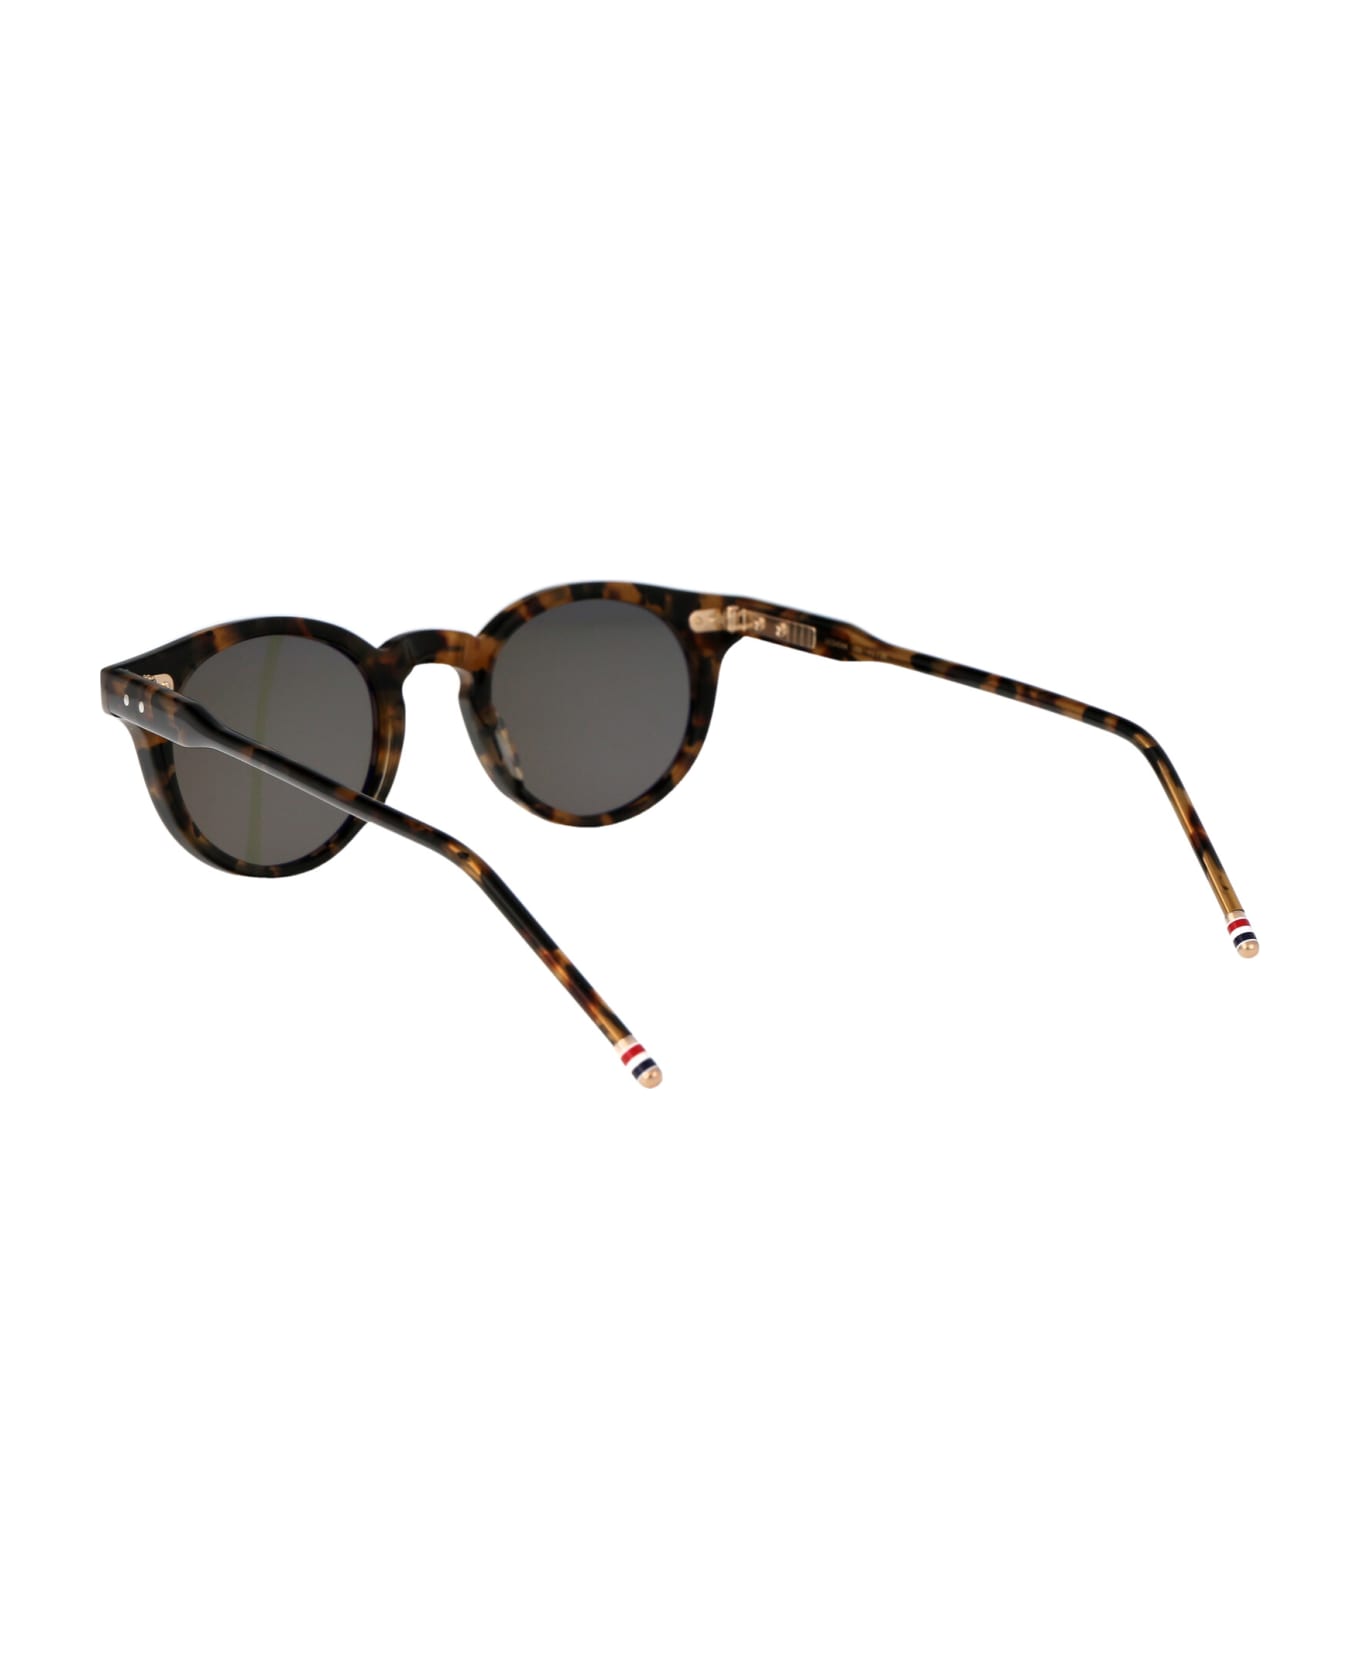 Thom Browne Ues404a-g0002-205-45 Sunglasses - 205 HAVANA サングラス